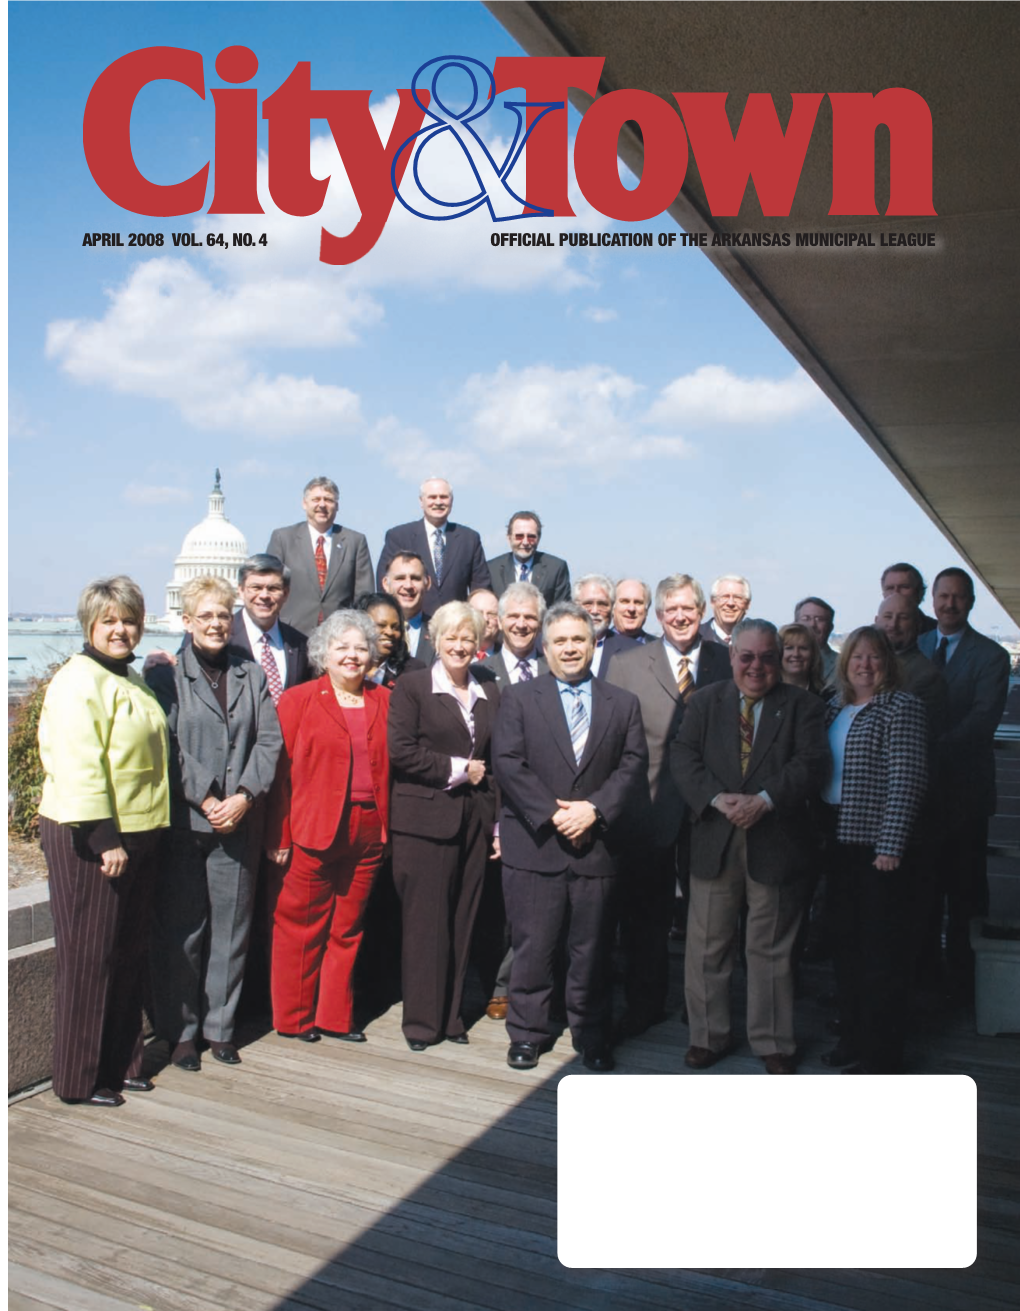 April 2008 Vol. 64, No. 4 Official Publication of the Arkansas Municipal League